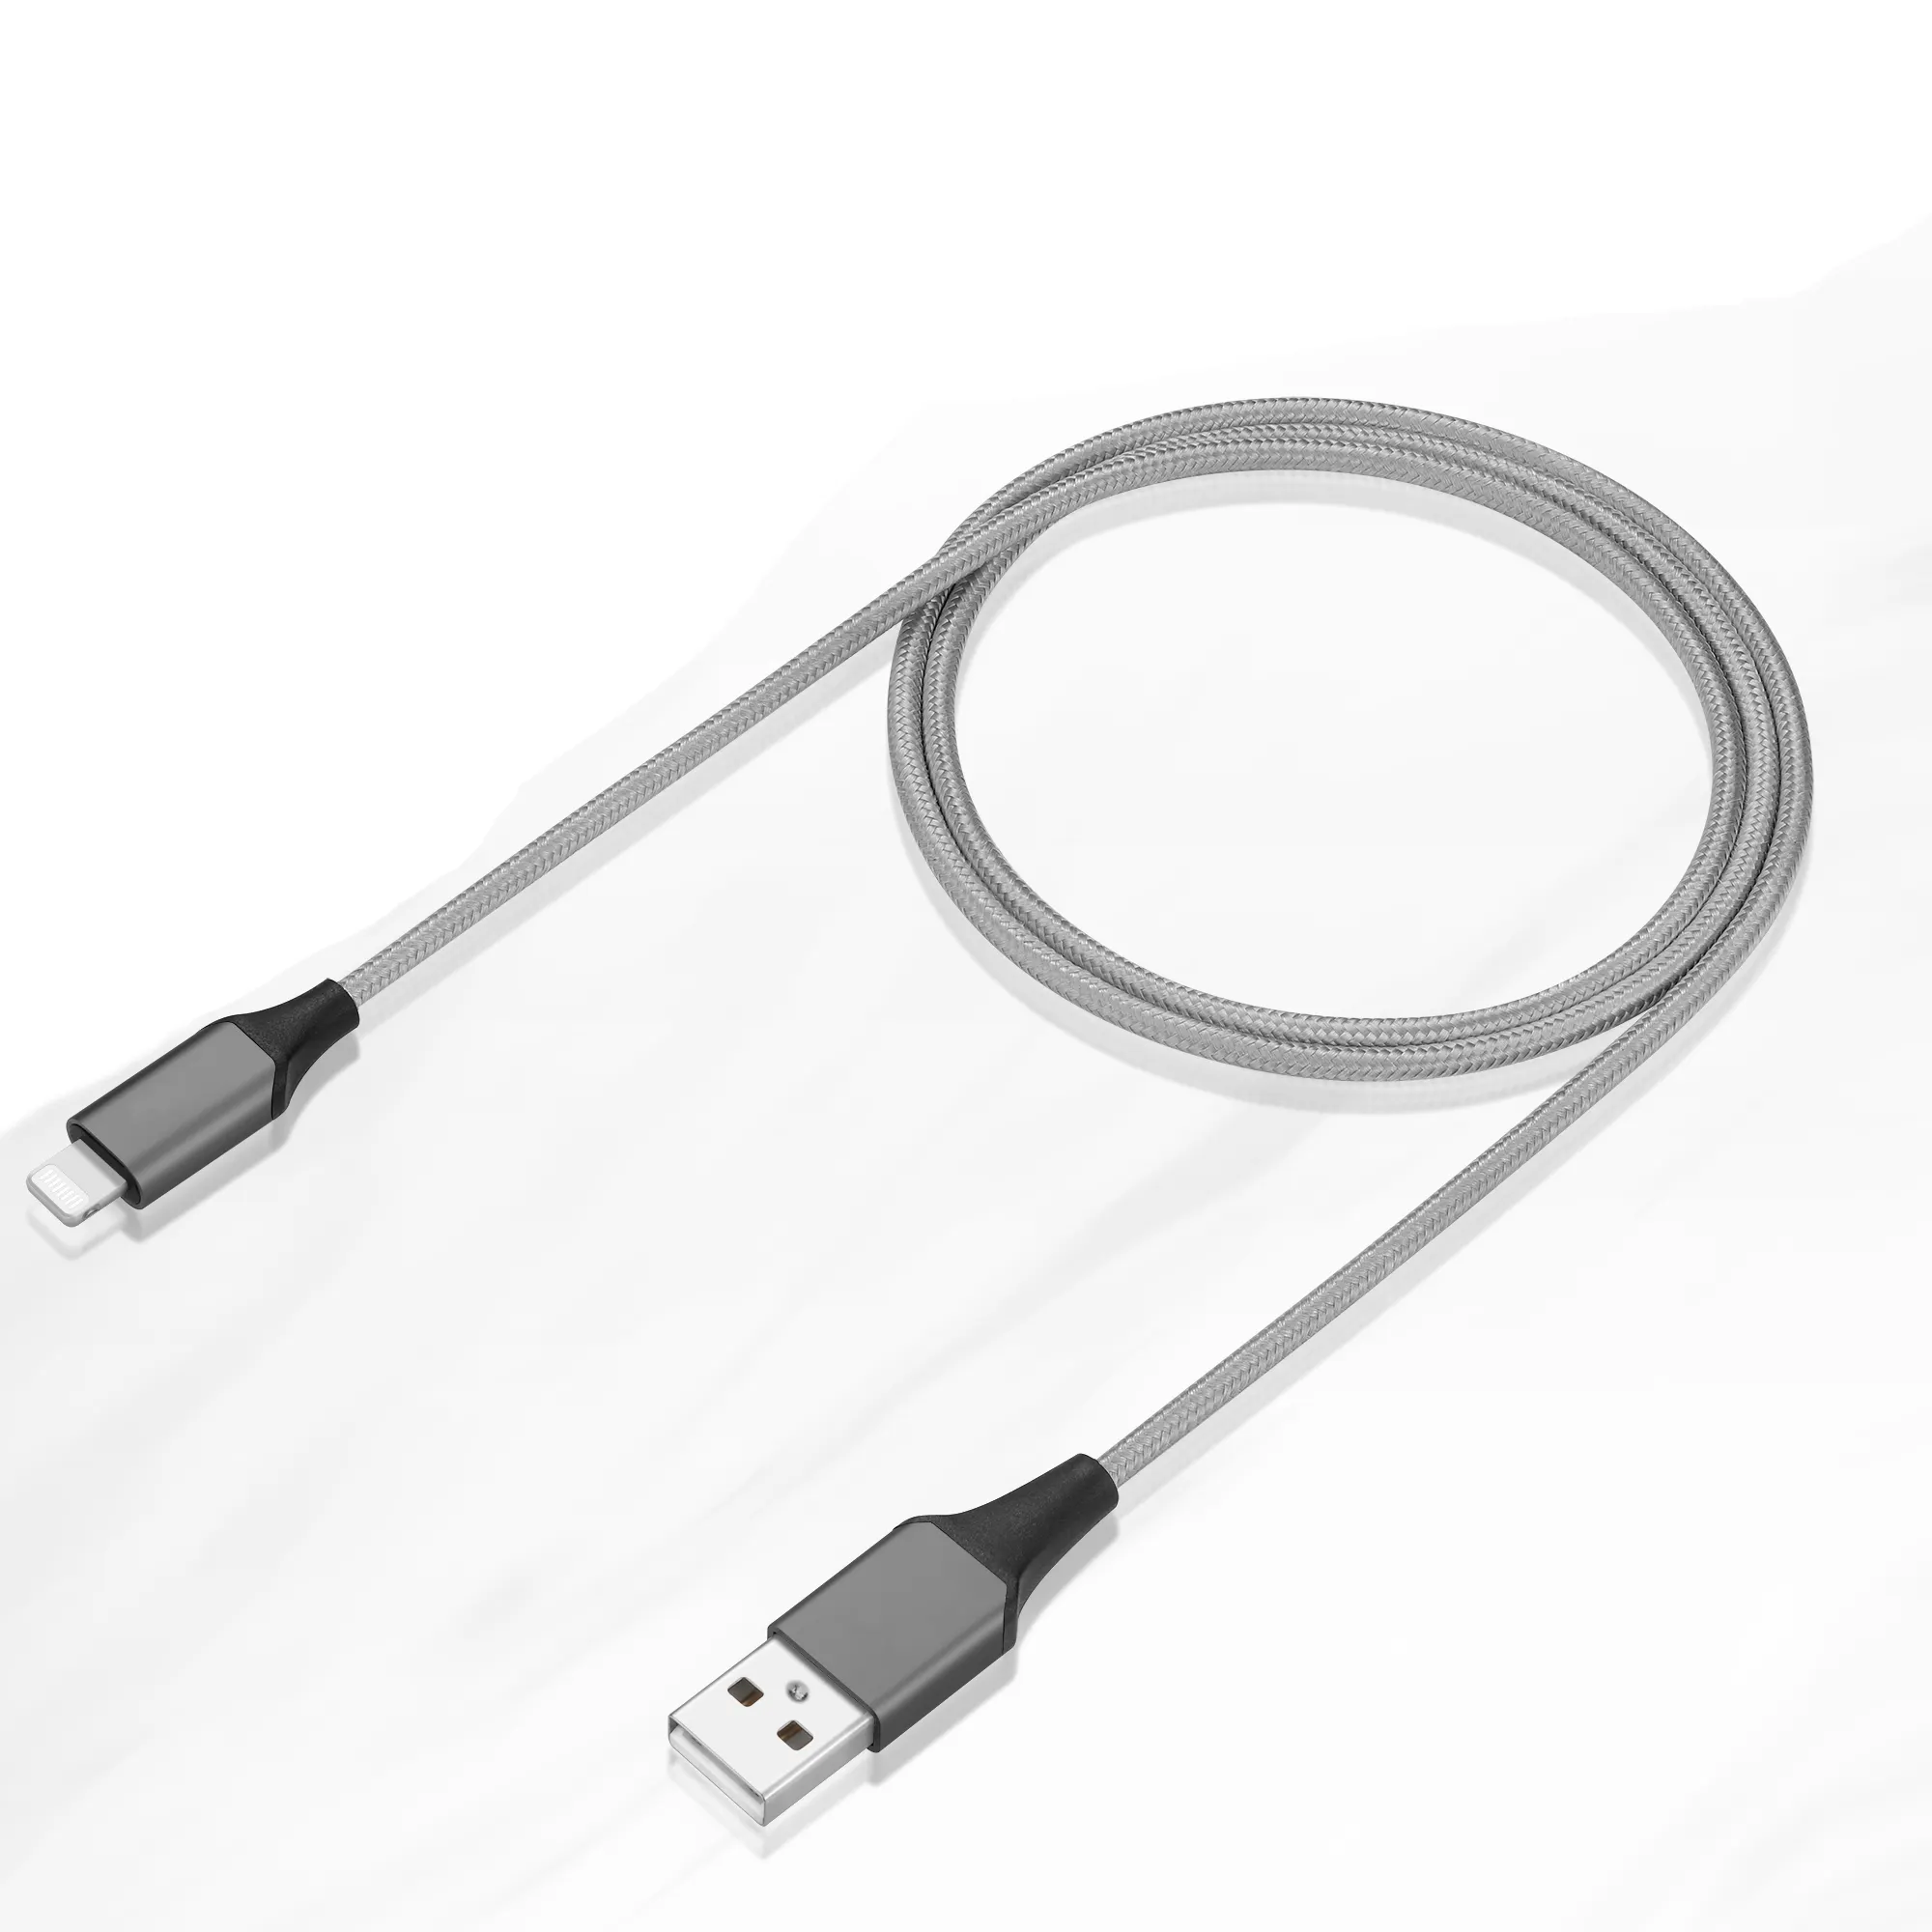 OEM 1 м 2 м Сертифицированный MFI USB кабель для быстрой зарядки и передачи данных оригинальный C89 Плетеный зарядный кабель для iPhone Apple MFi кабель